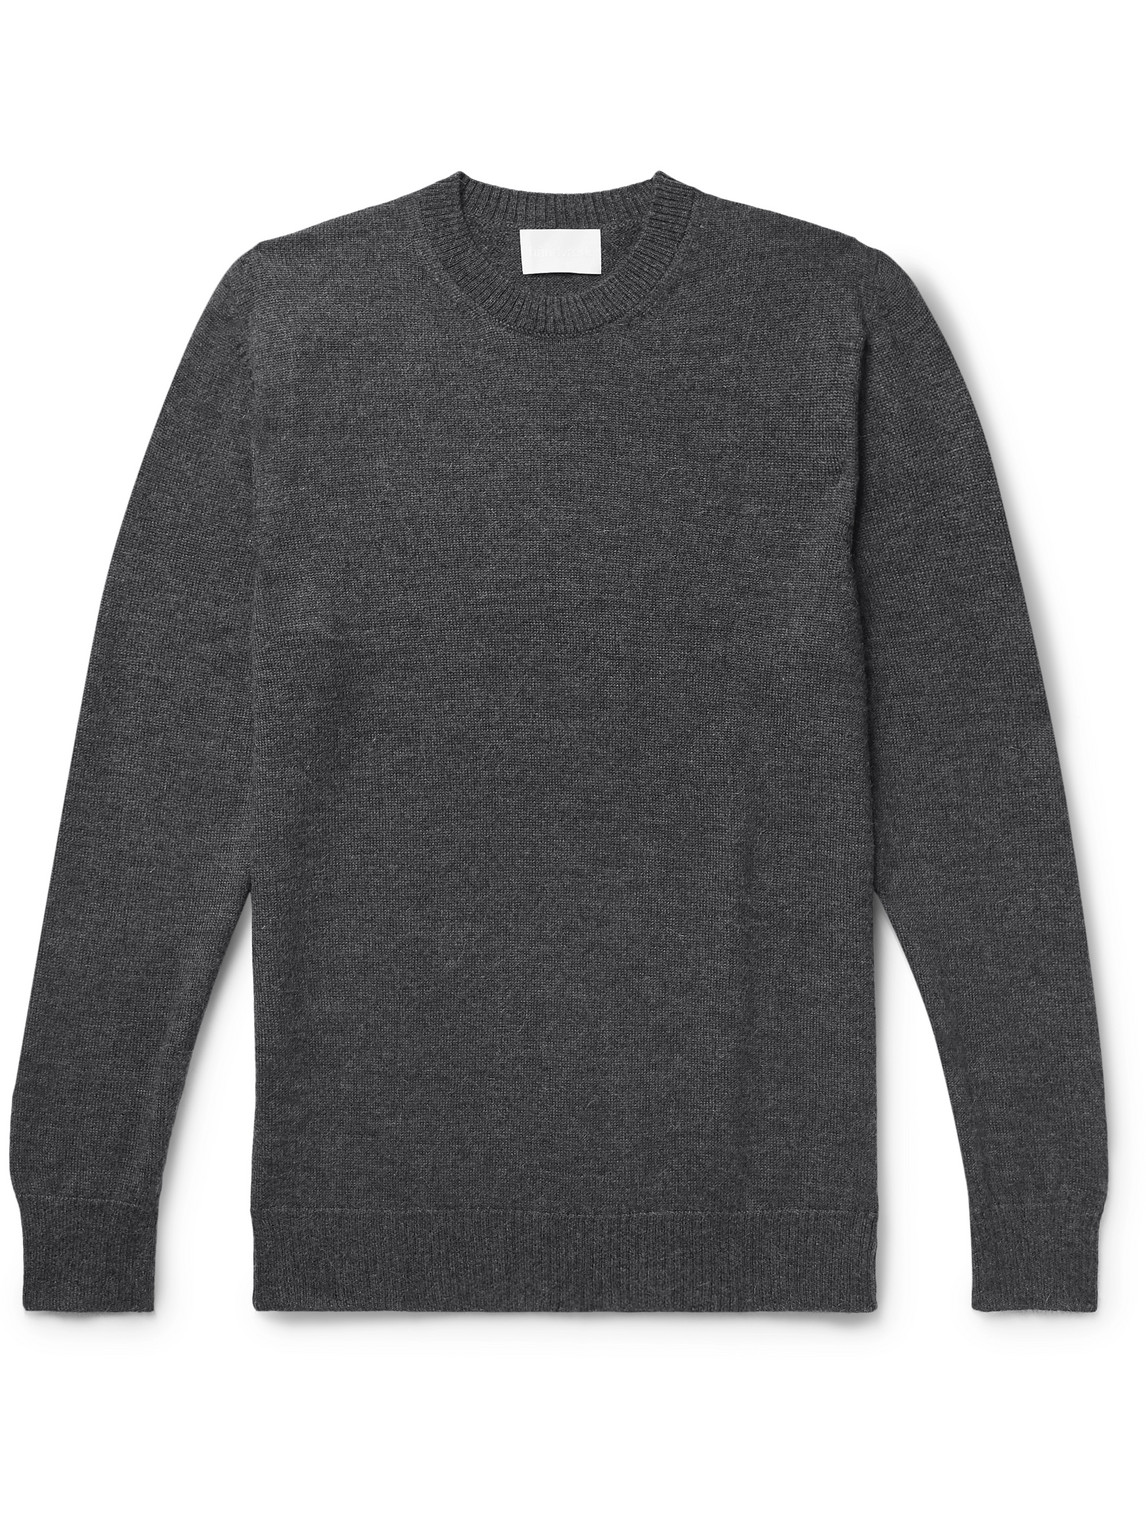 Håndværk Alpaca Sweater